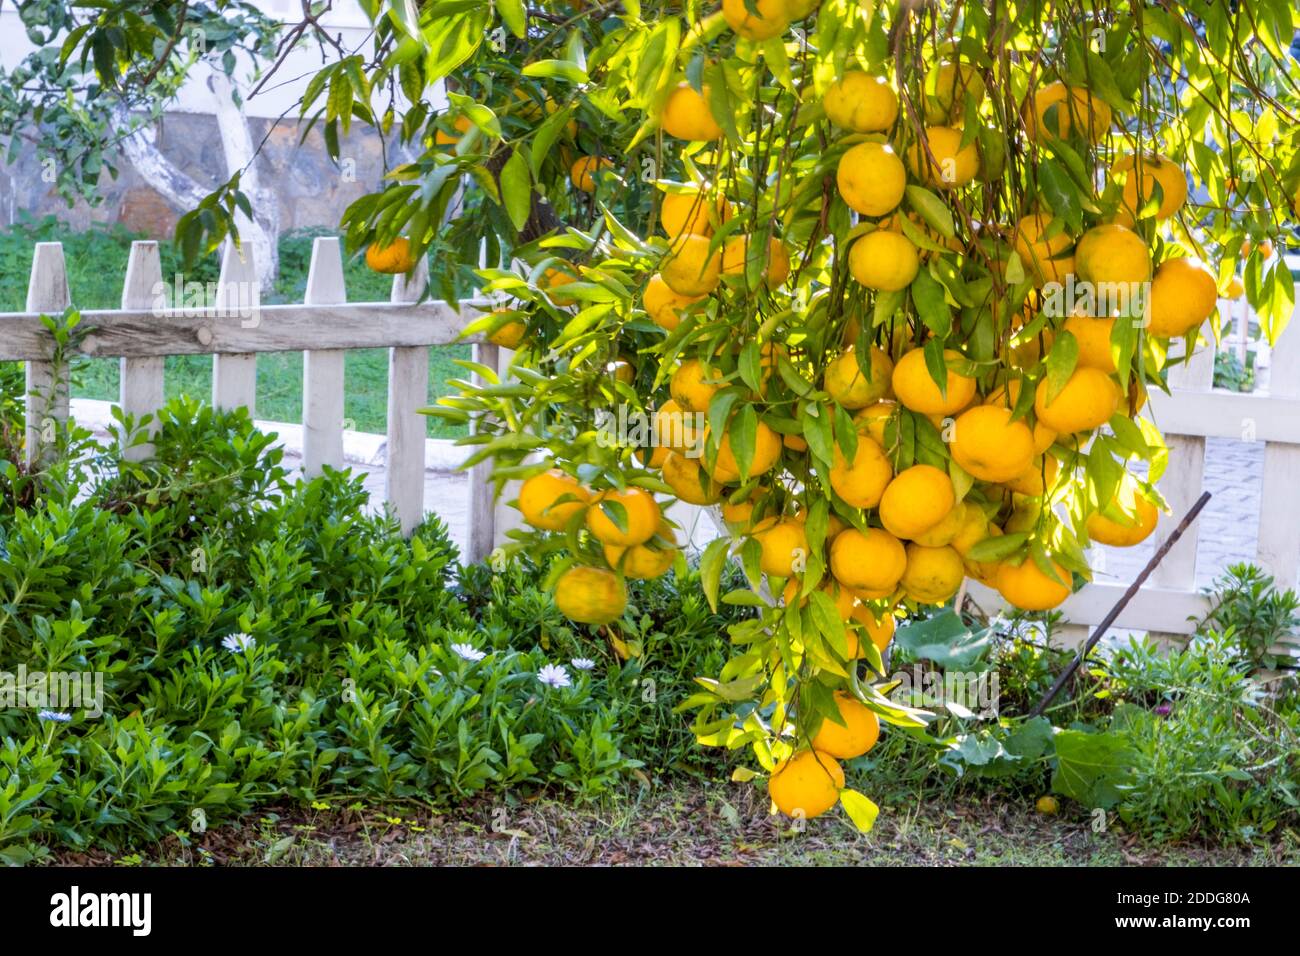 Viele orangefarbene Mandarinen an einem einzigen Ast hängen und schwingen im Wind. Natürlicher und farbenfroher Lebensmittelhintergrund Stockfoto